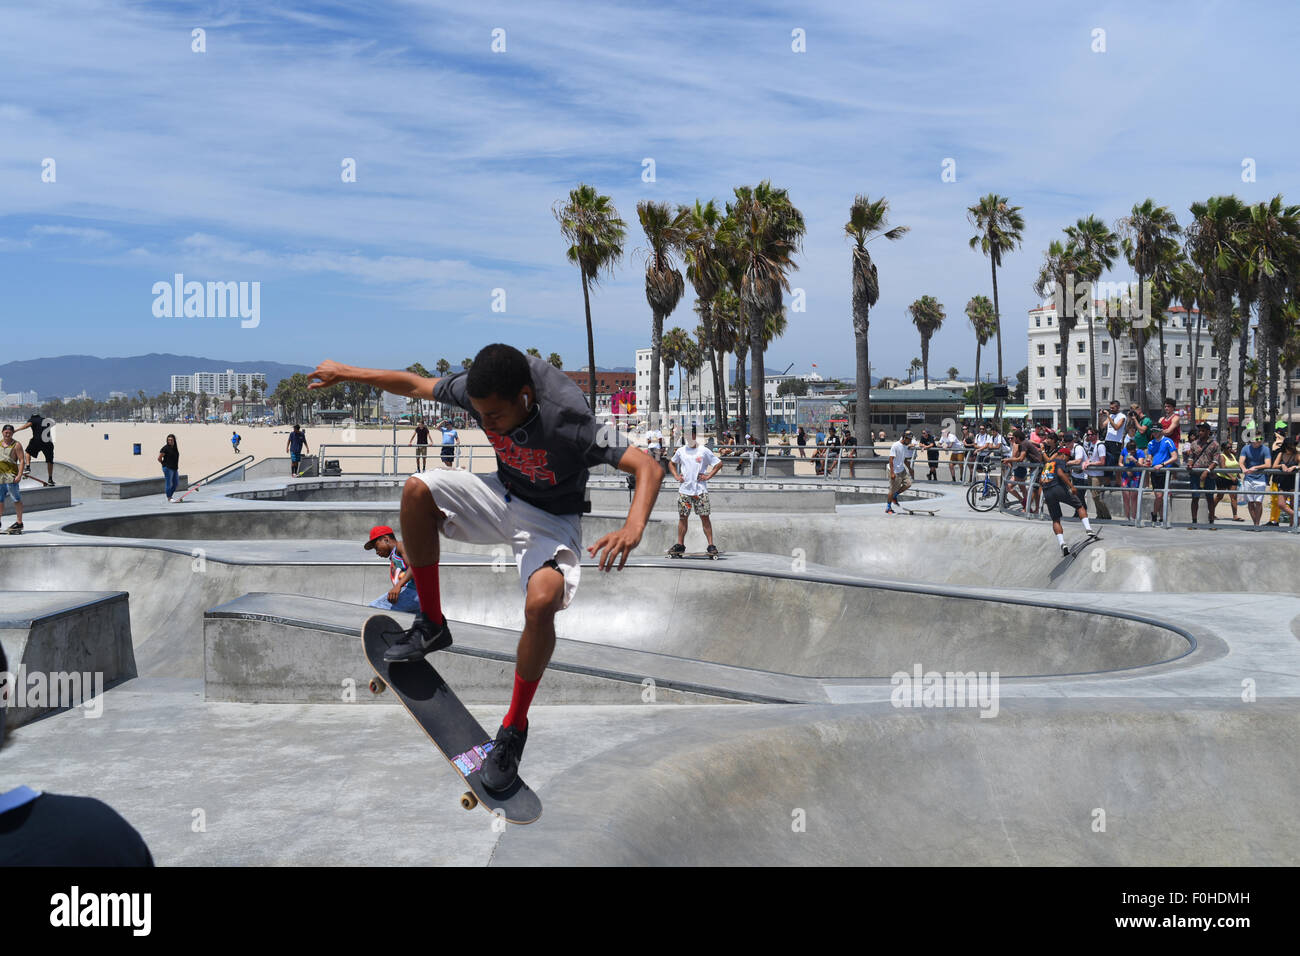 Stati Uniti d'America California CA Los Angeles Venice Beach Skateboard Park un libero e pubblico skate park Foto Stock